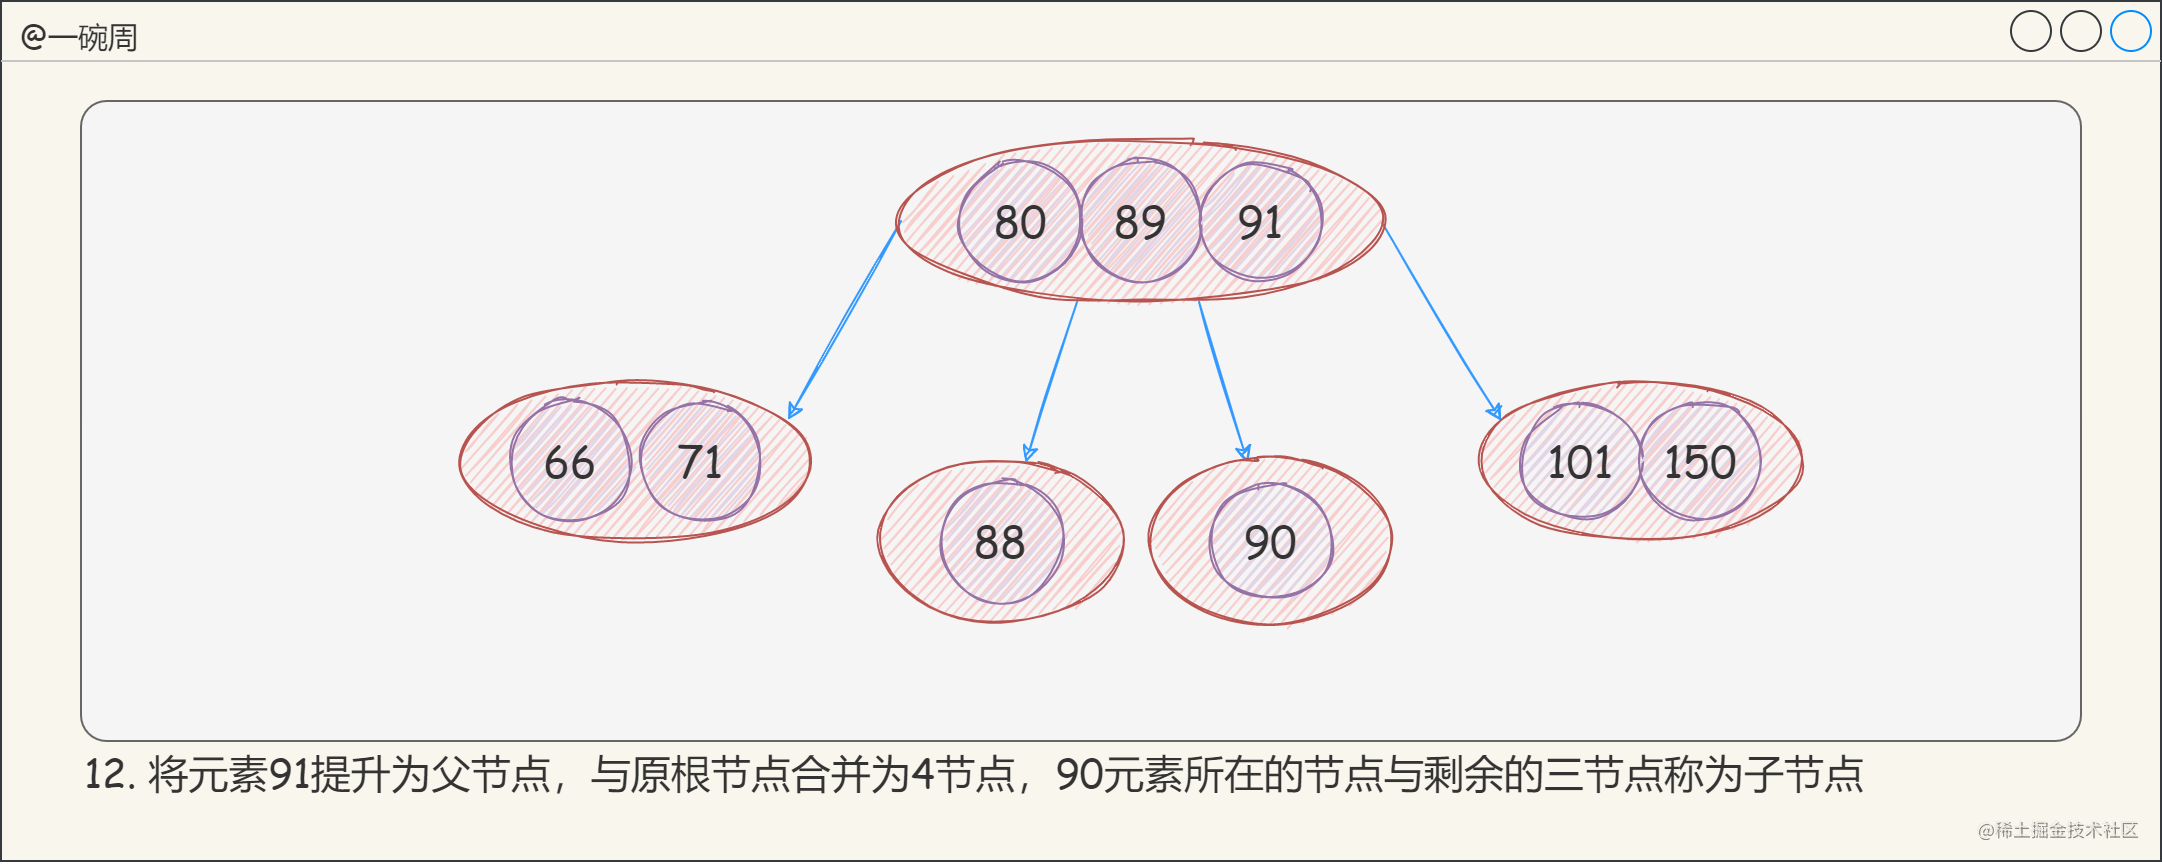 13_2-3-4树的构建过程8_peEpW9t5rc.png